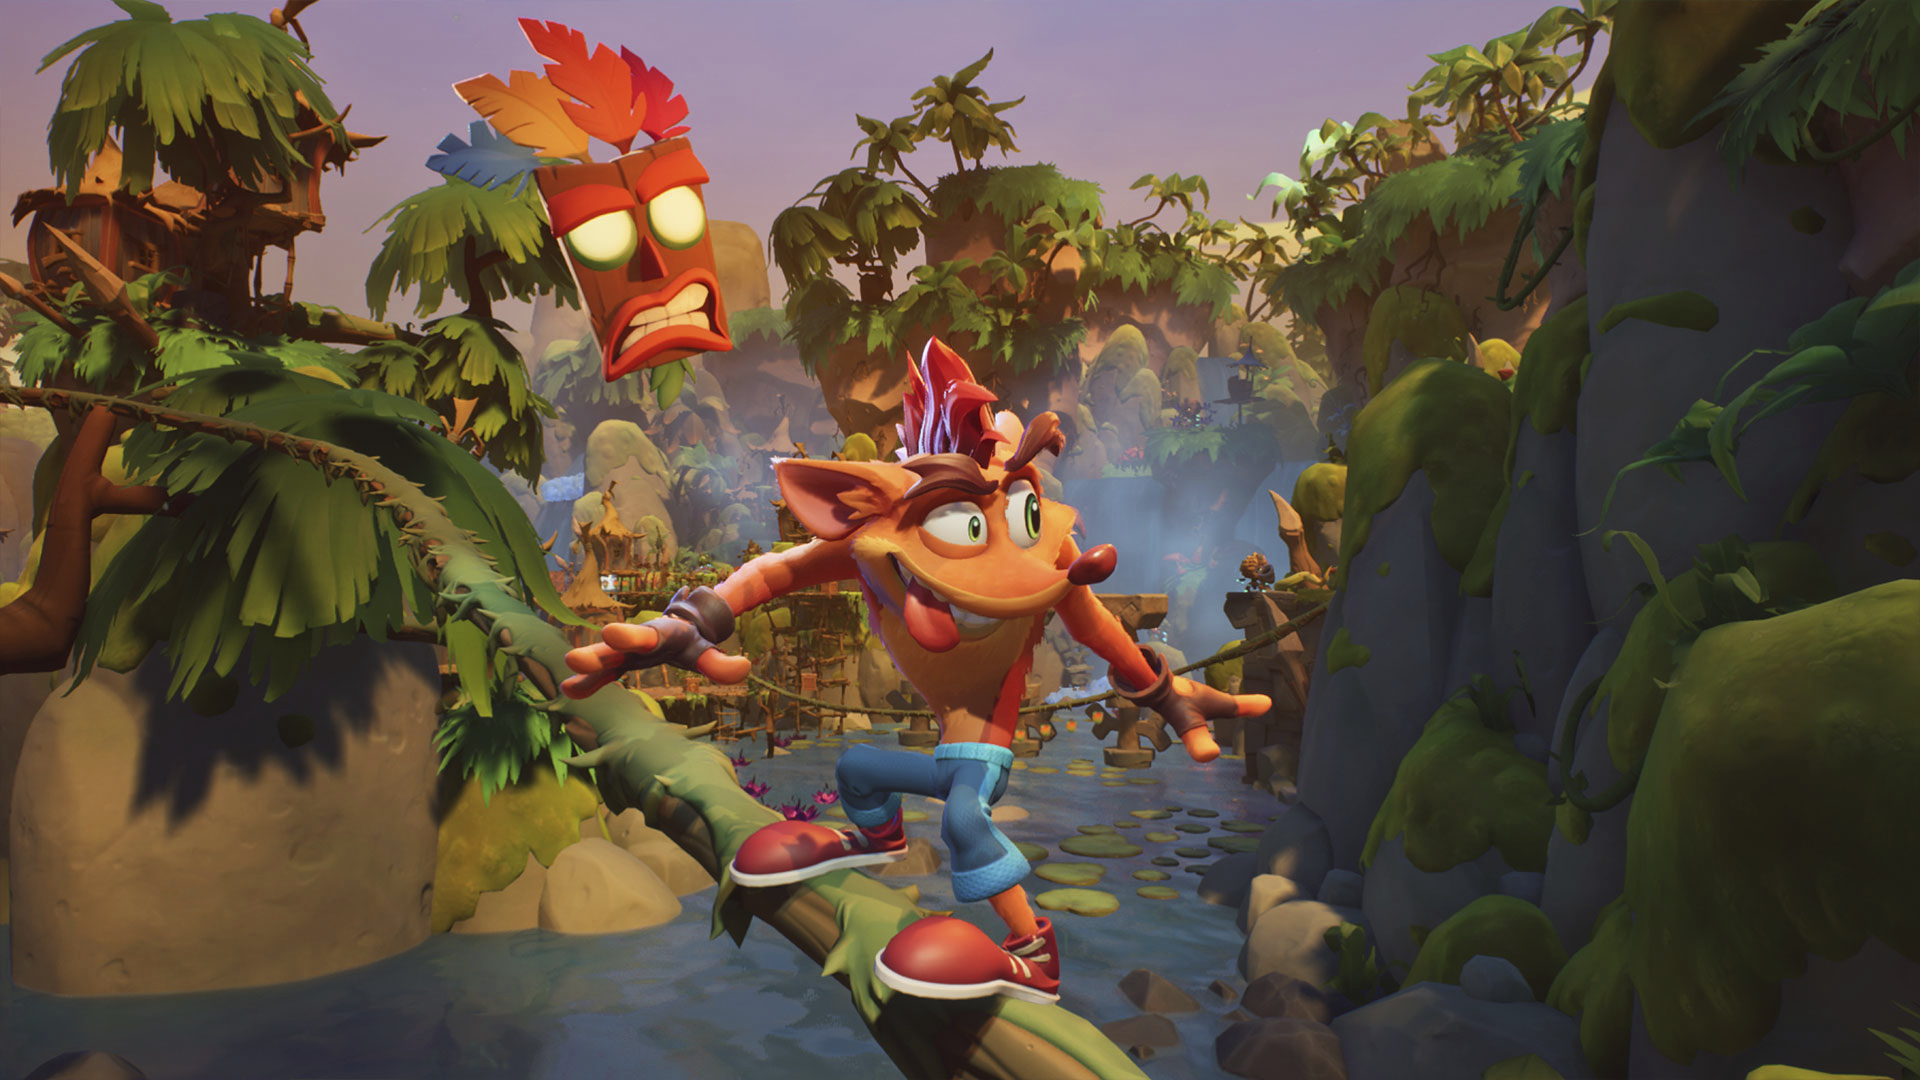 Screenshot van Crash Bandicoot 4: It's About Time waarop Crash zich op een boomstronk door de jungle beweegt.